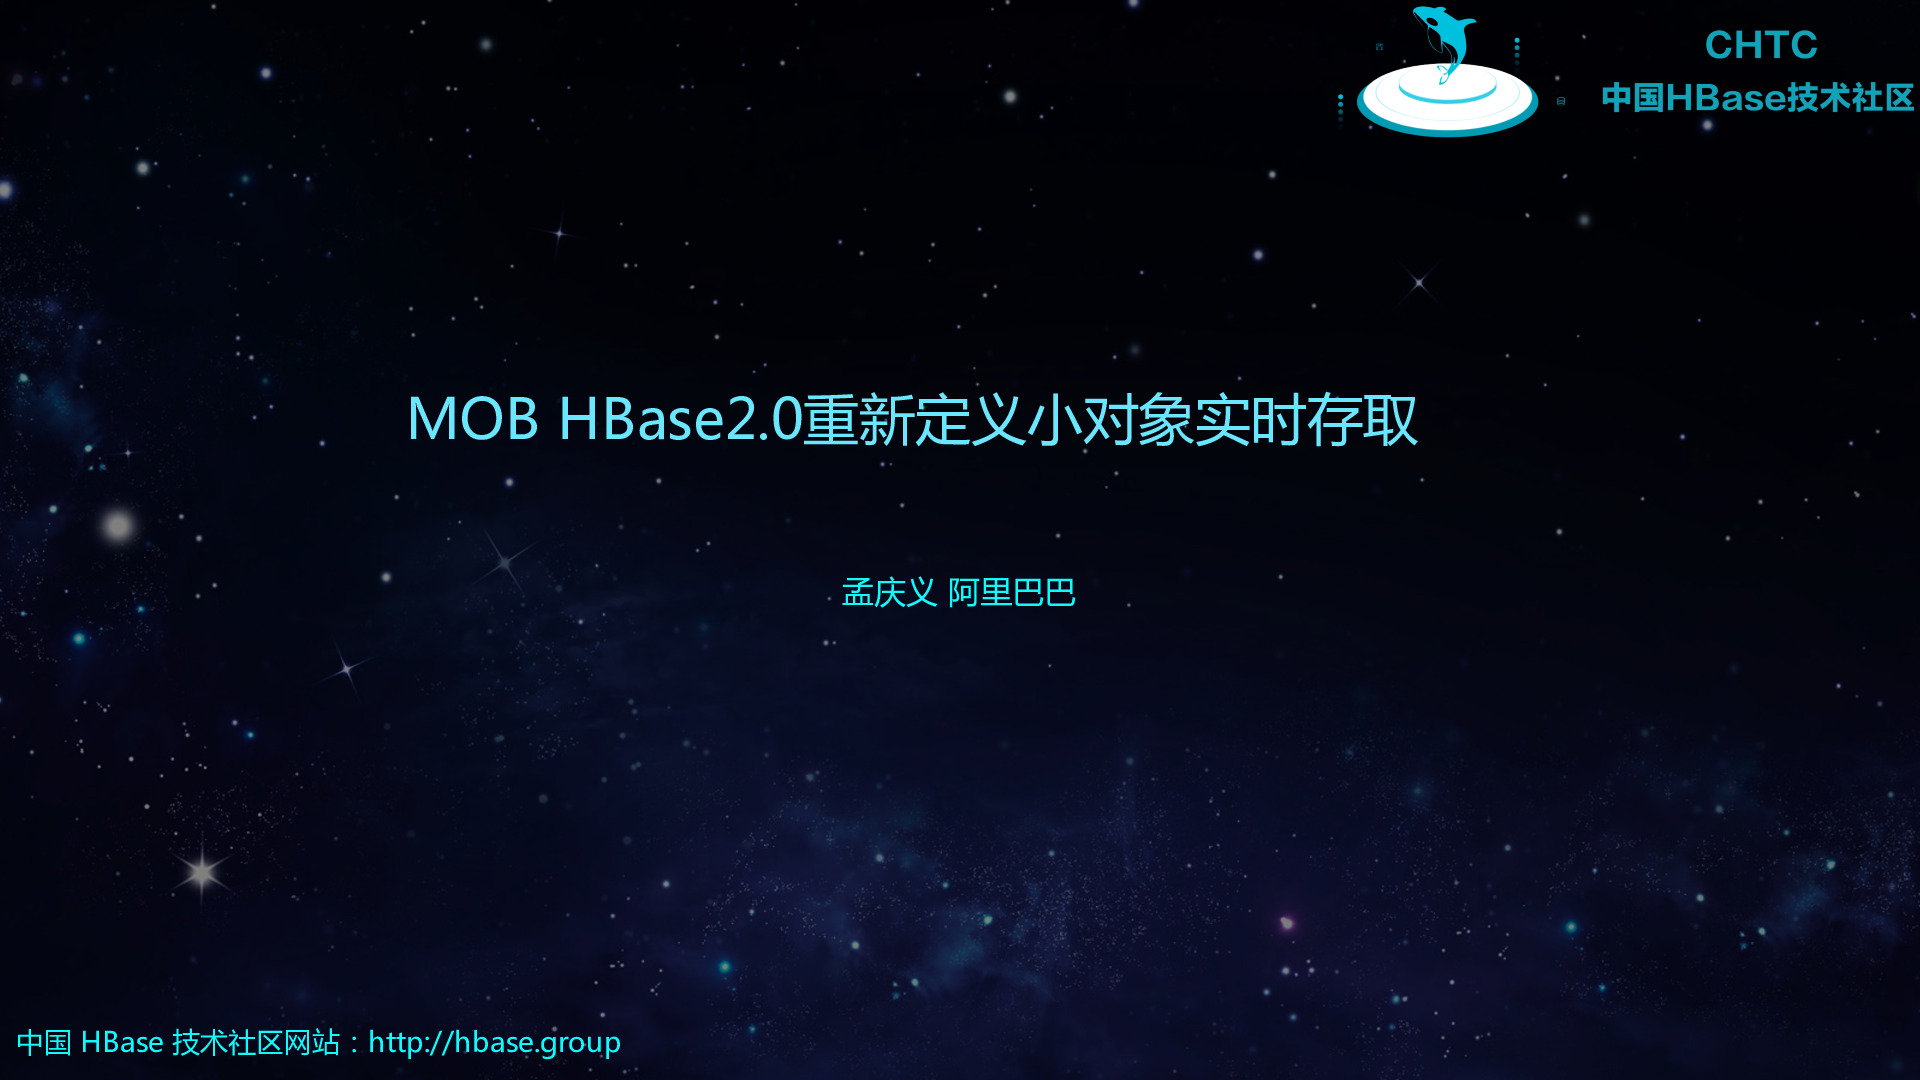 中国HBase技术社区第七届-MeetUp-成都站-HBase2.0重新定义小对象实时存取